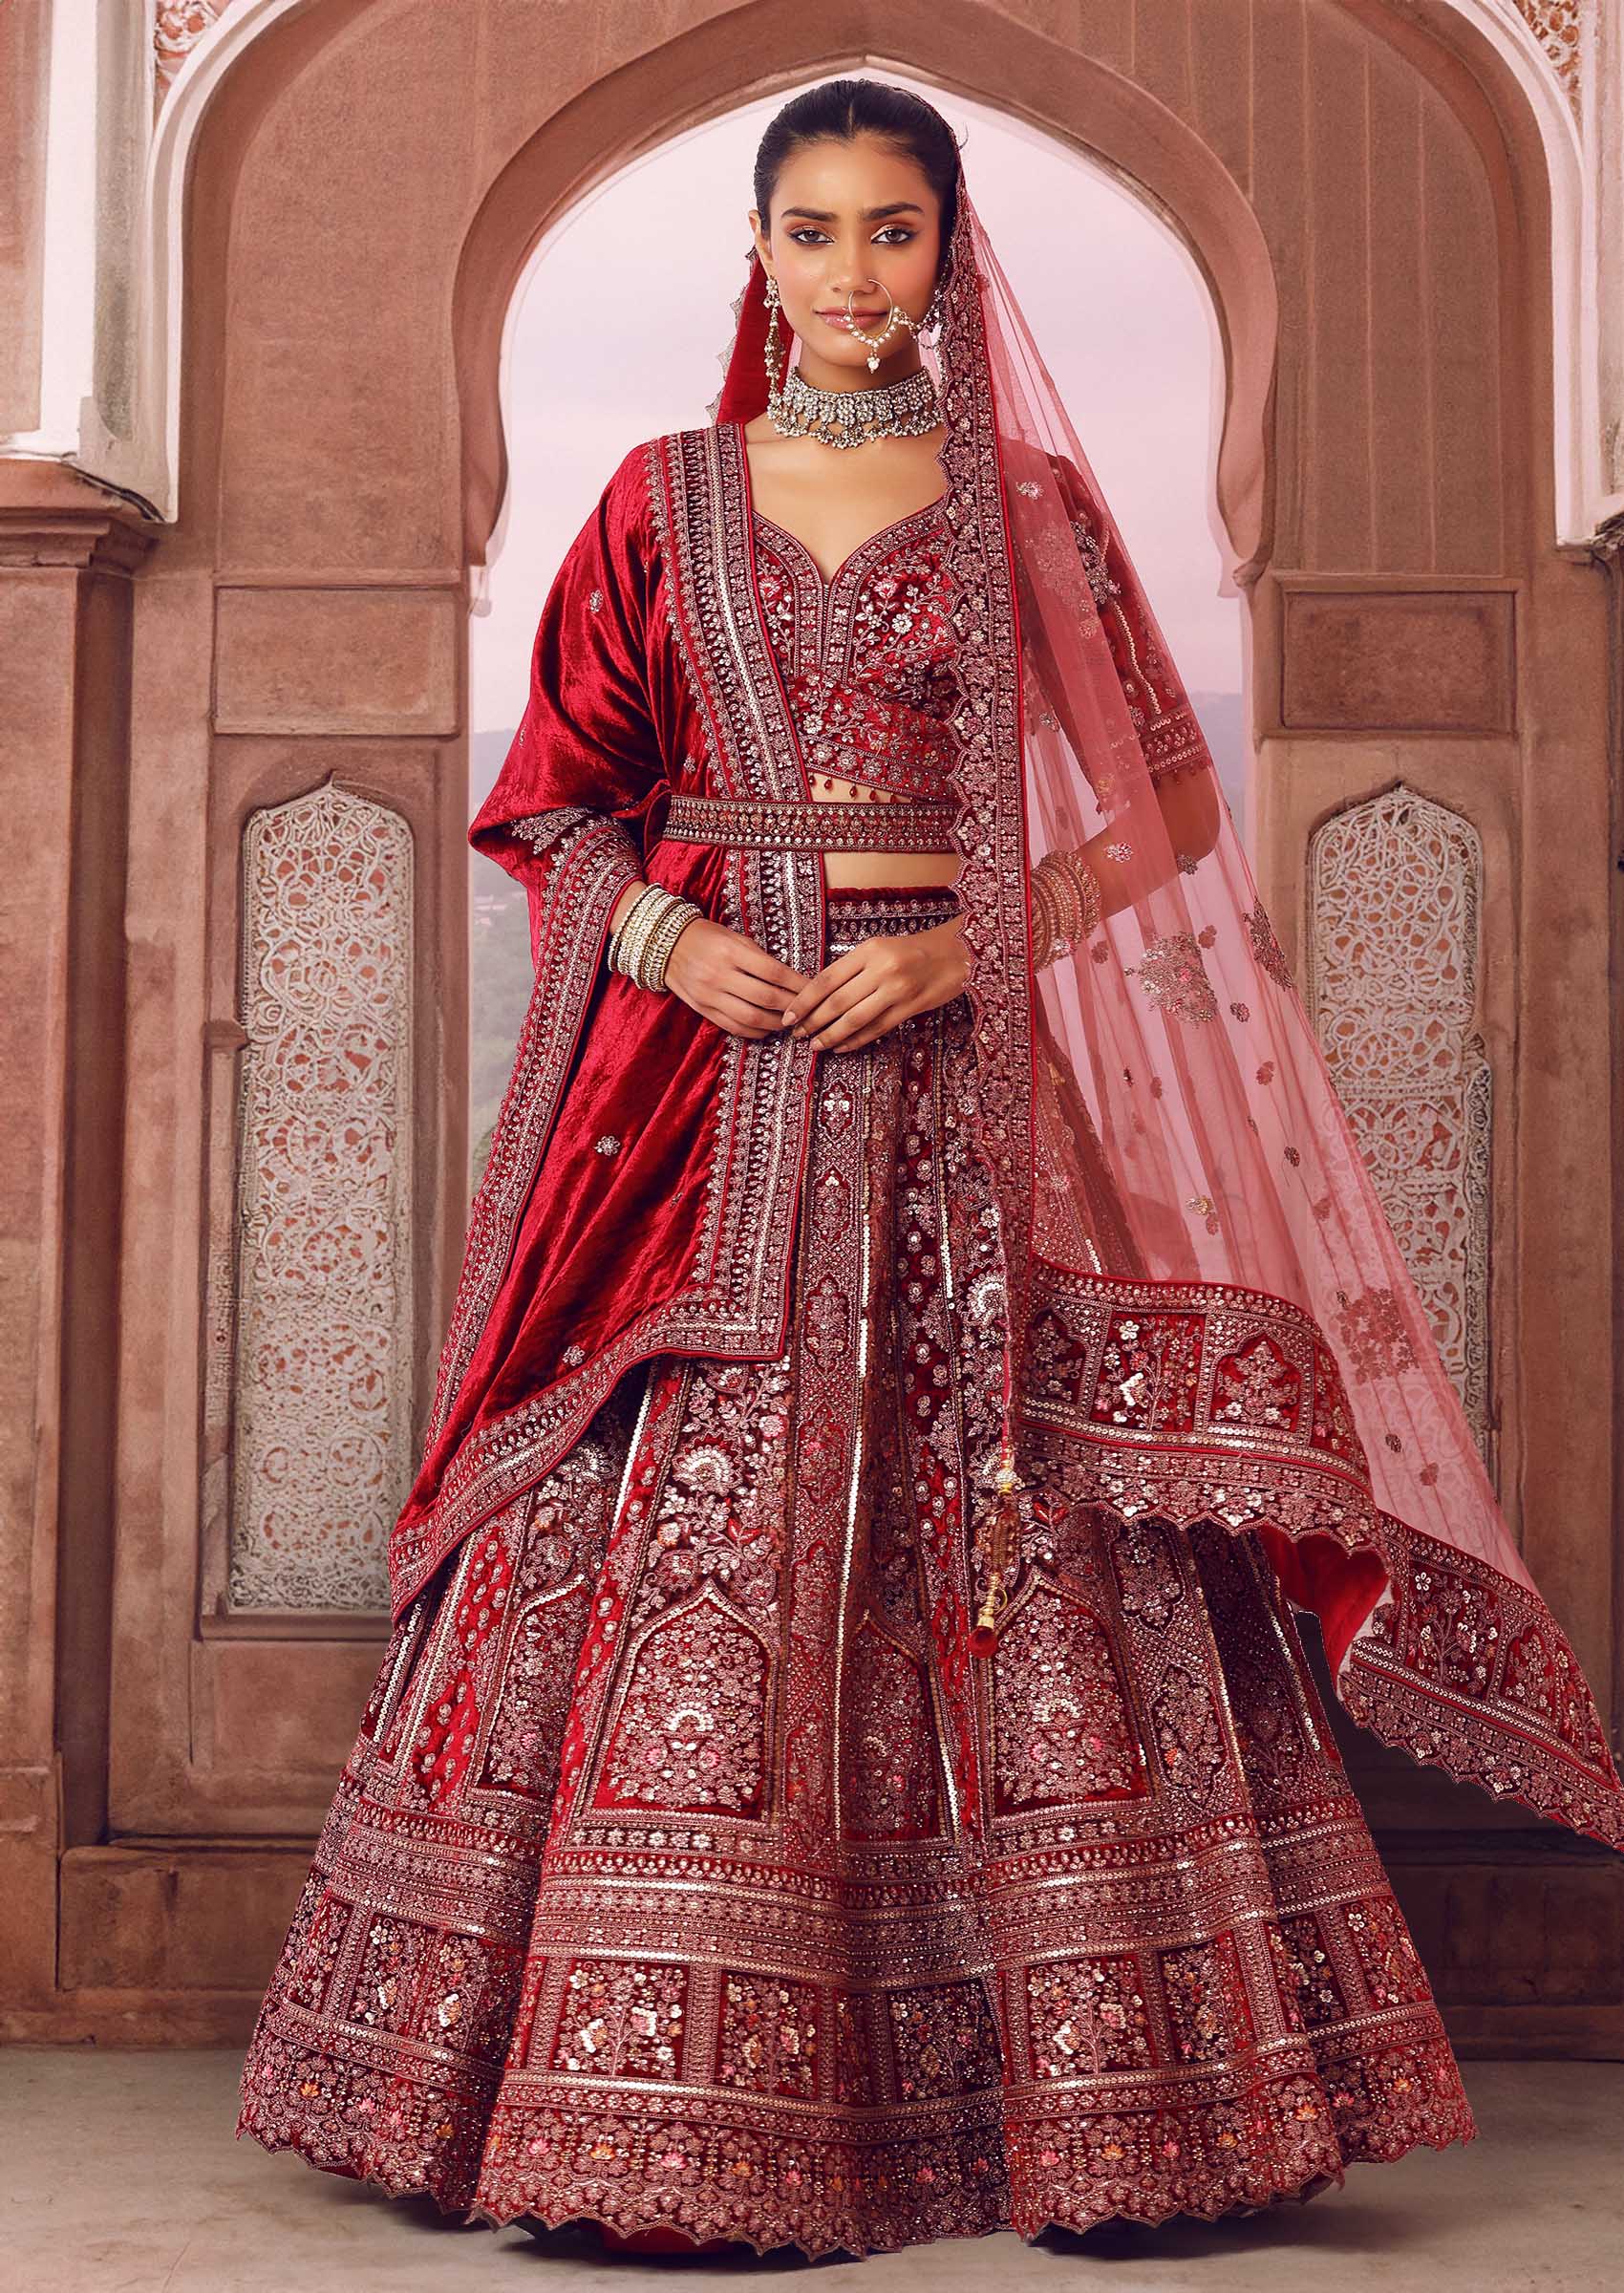 Buy Aditi Rao Hydari'S Red & Saffron Saflower Embroidered Lehenga With  Dupatta Online - RI.Ritu Kumar India Store View